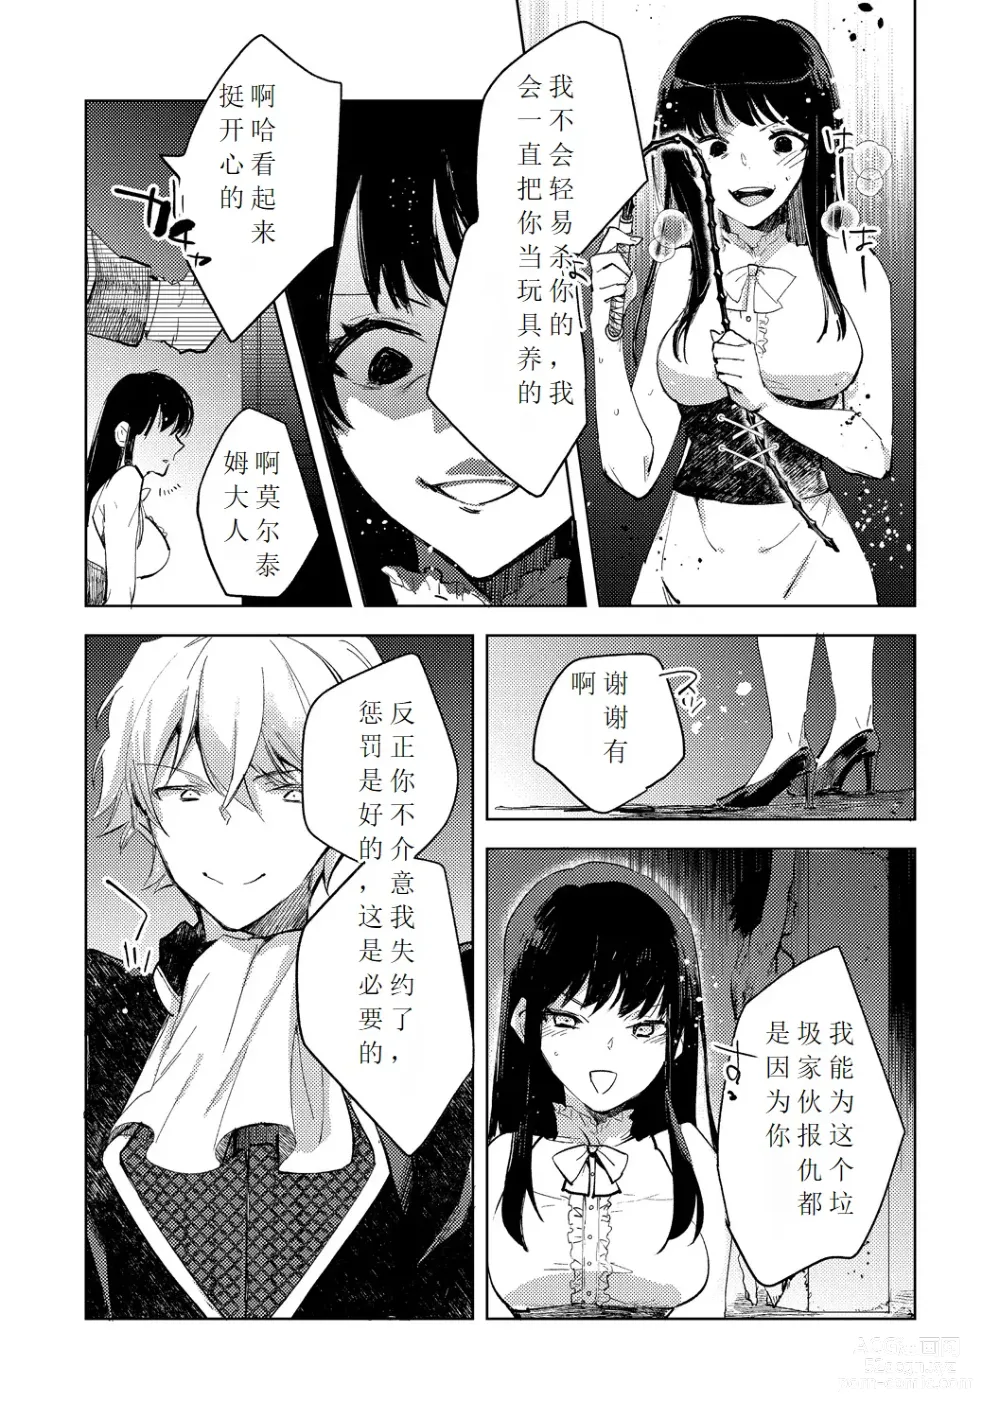 Page 35 of manga Tensei shitara Daruma Joshi ni Sareta Usotsuki Bitch.